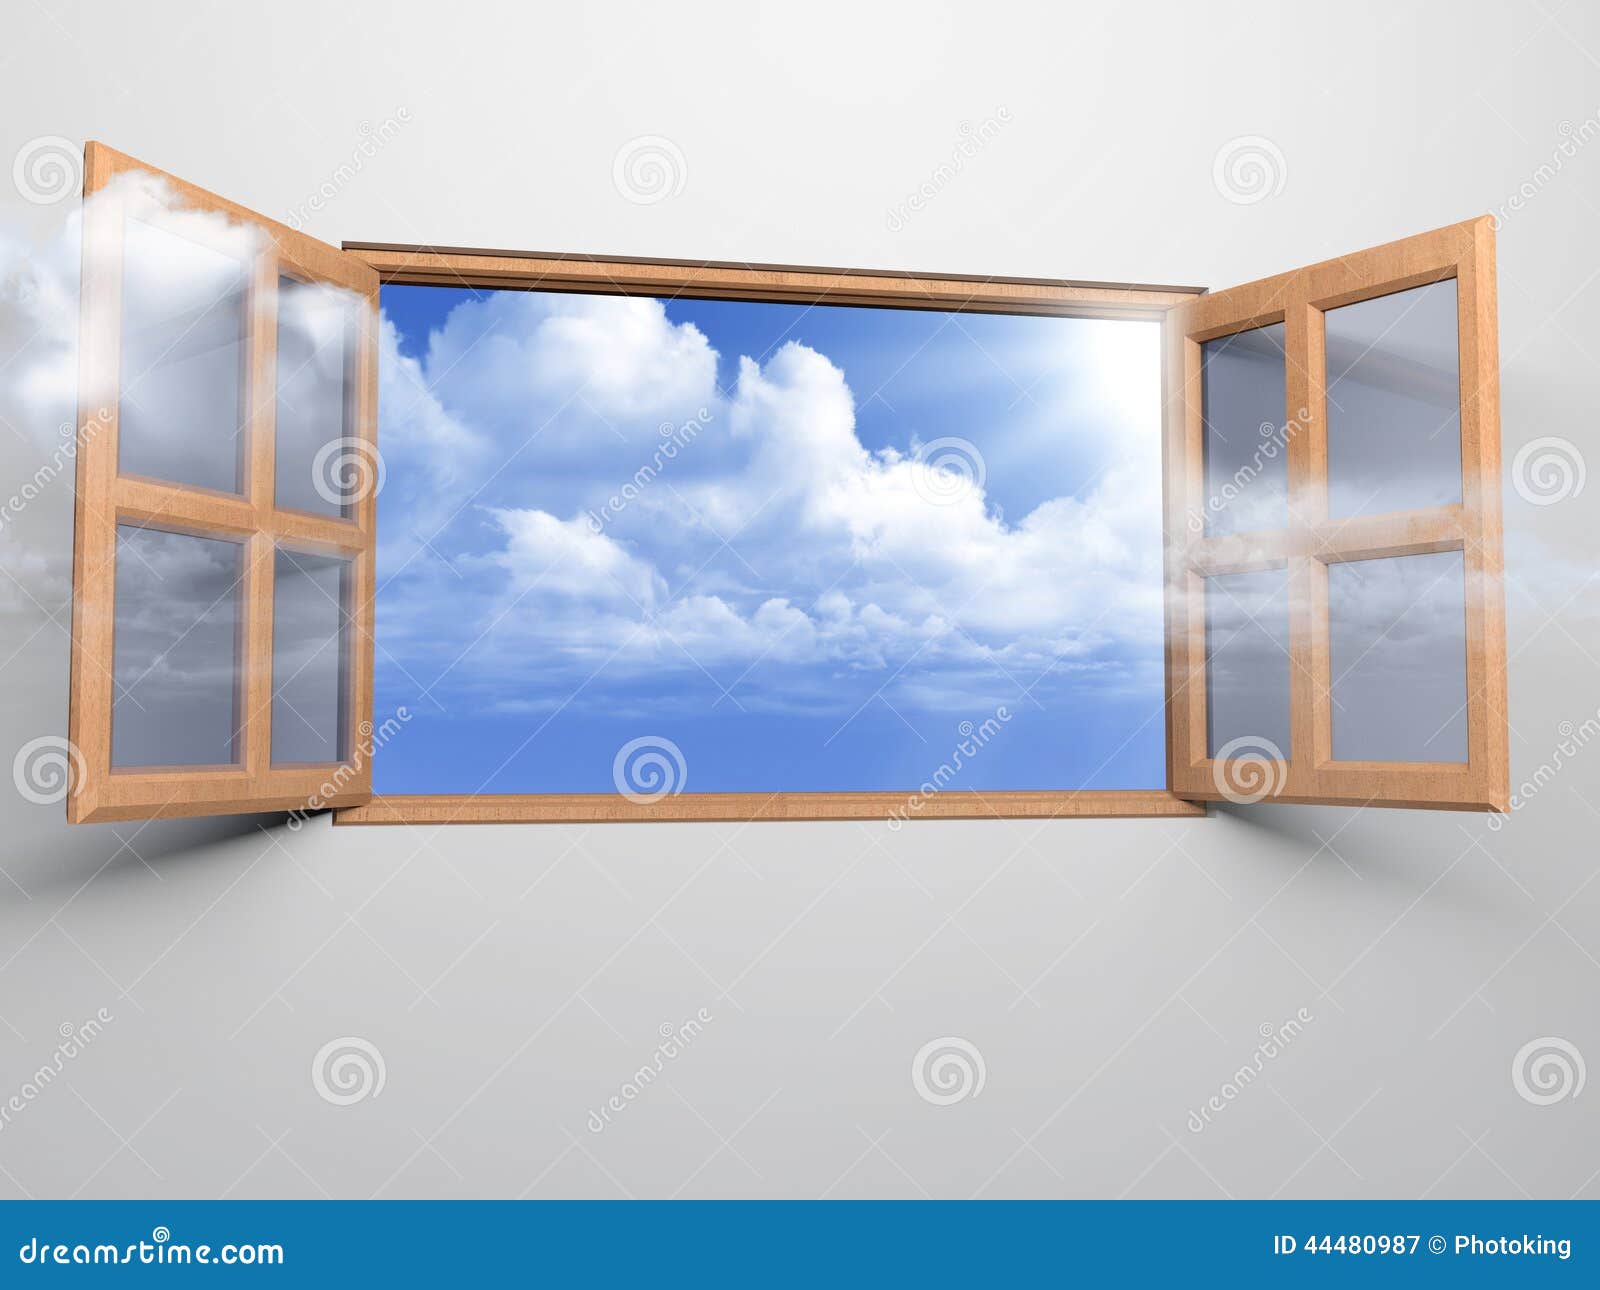 window to sky